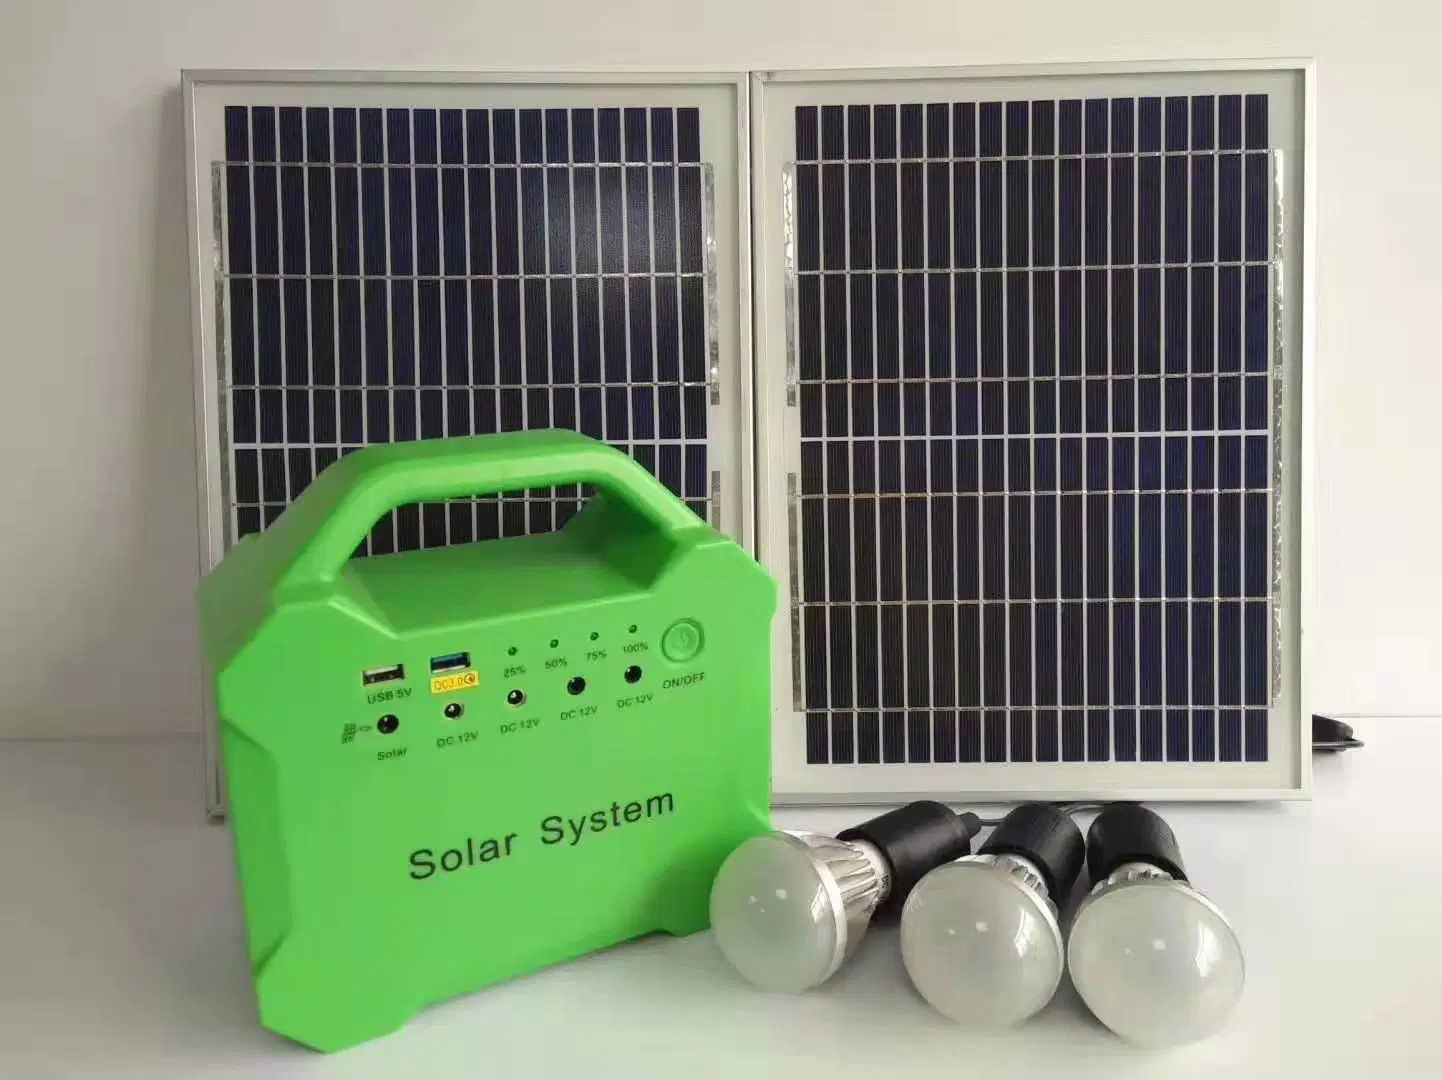 نظام قدرة المولد الشمسي للتوصيل والتشغيل بقدرة 300 واط